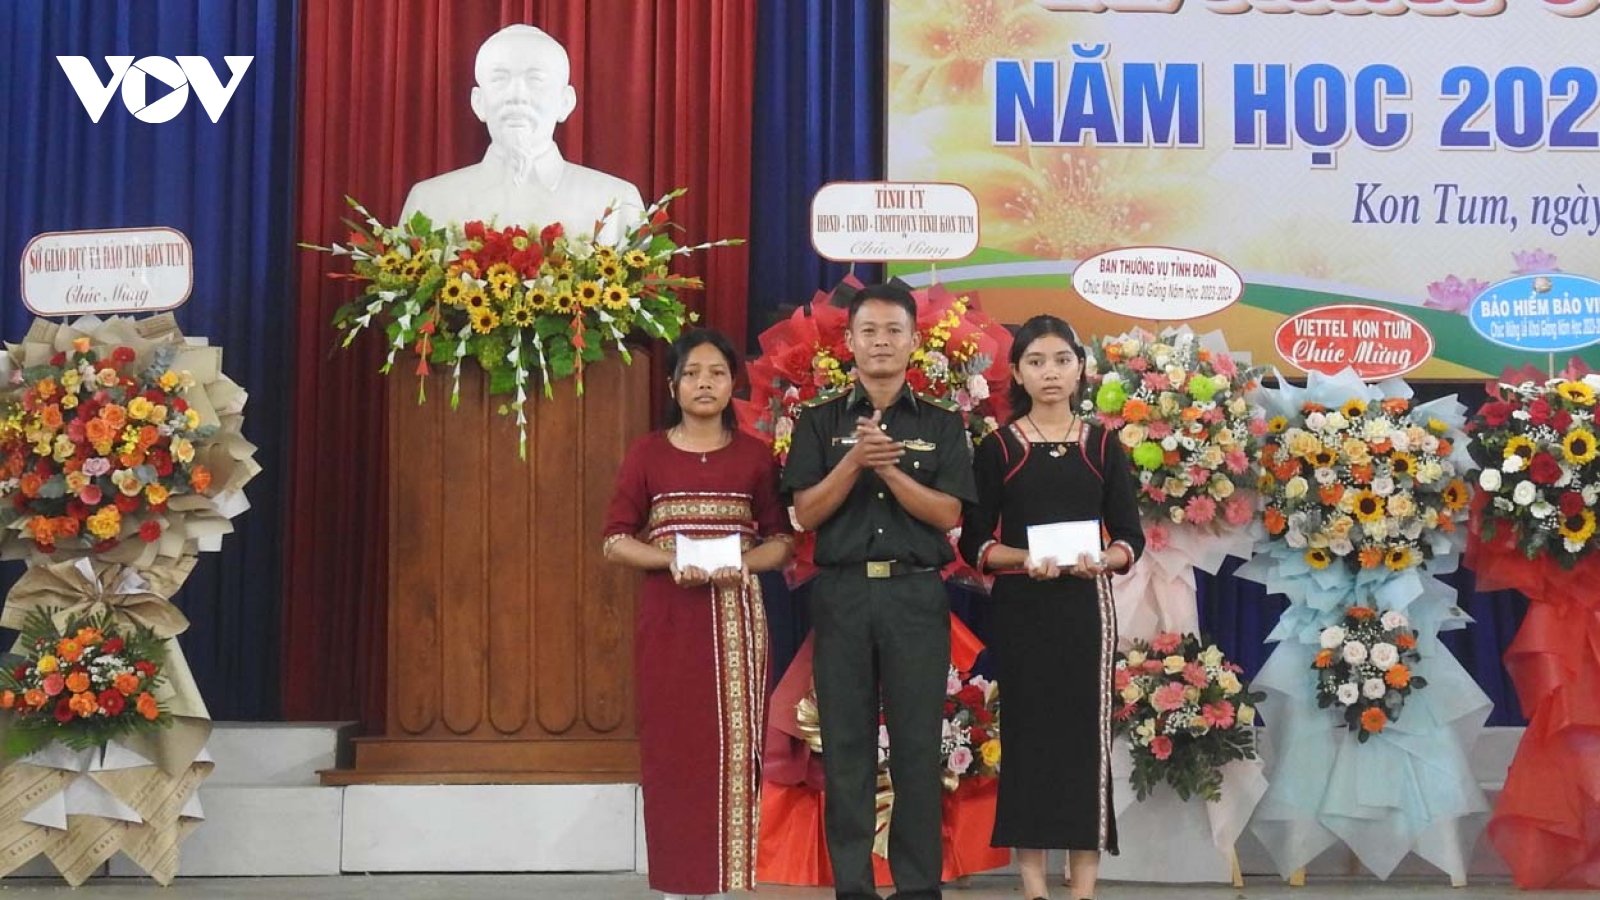 Bộ đội Biên phòng Kon Tum hỗ trợ học sinh khu vực biên giới trên 1,9 tỷ đồng